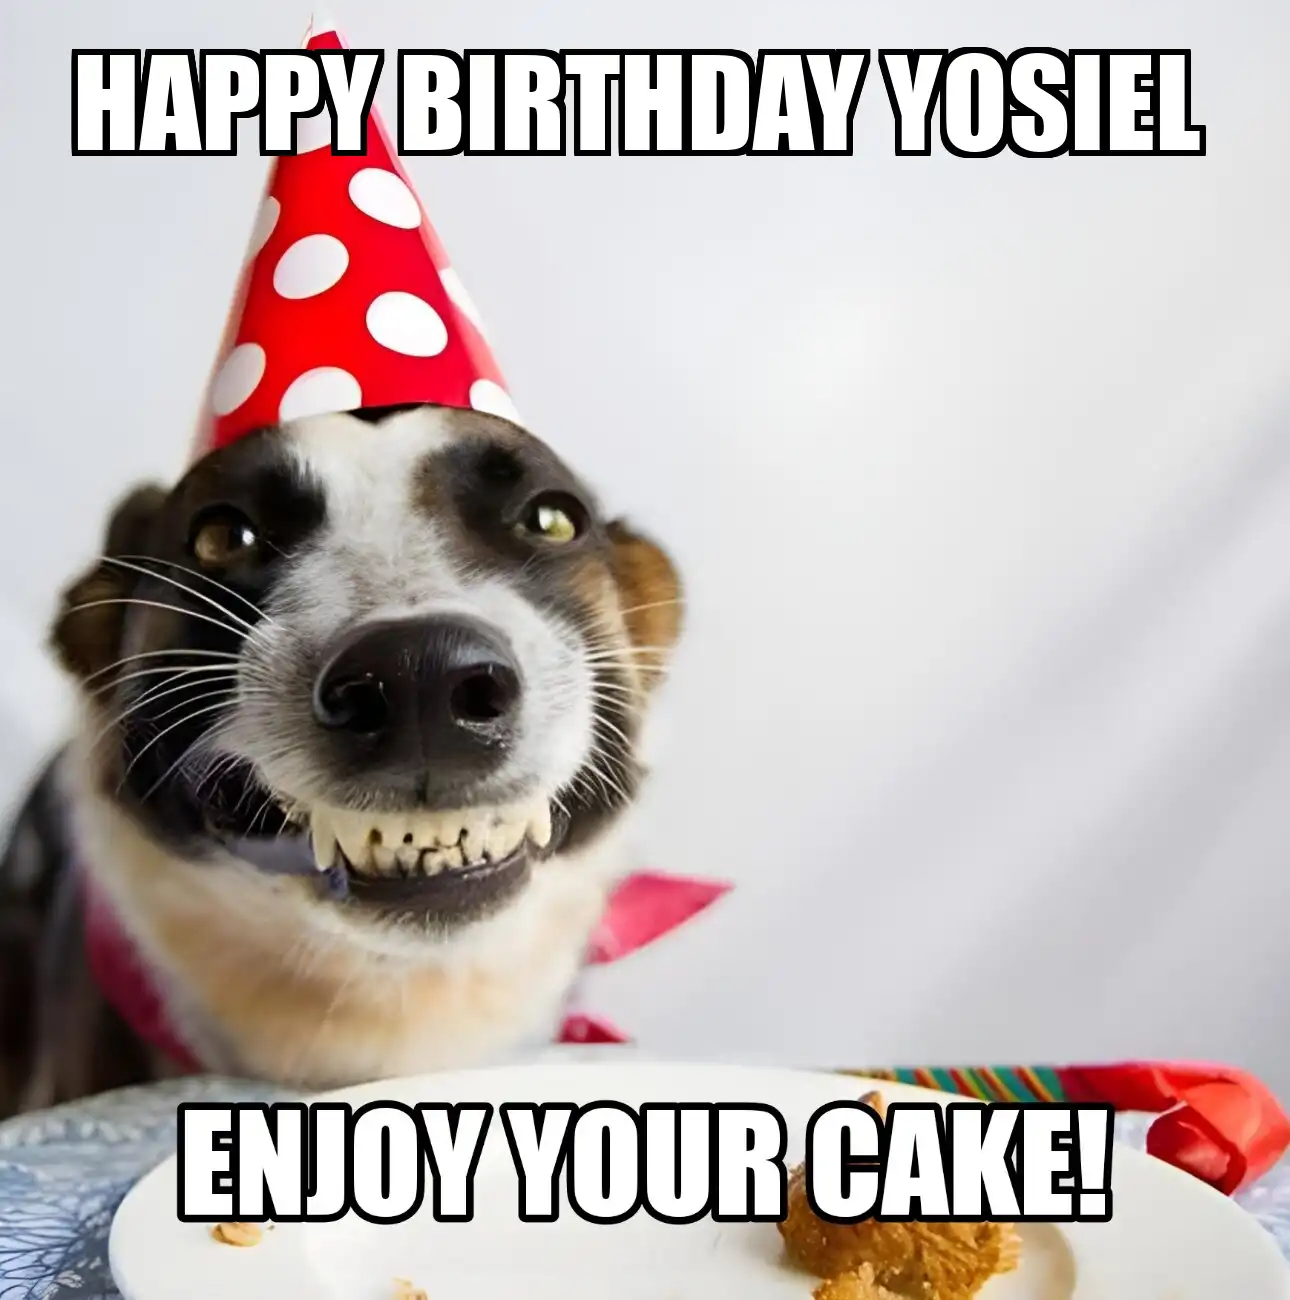 Happy Birthday Yosiel Enjoy Your Cake Dog Meme